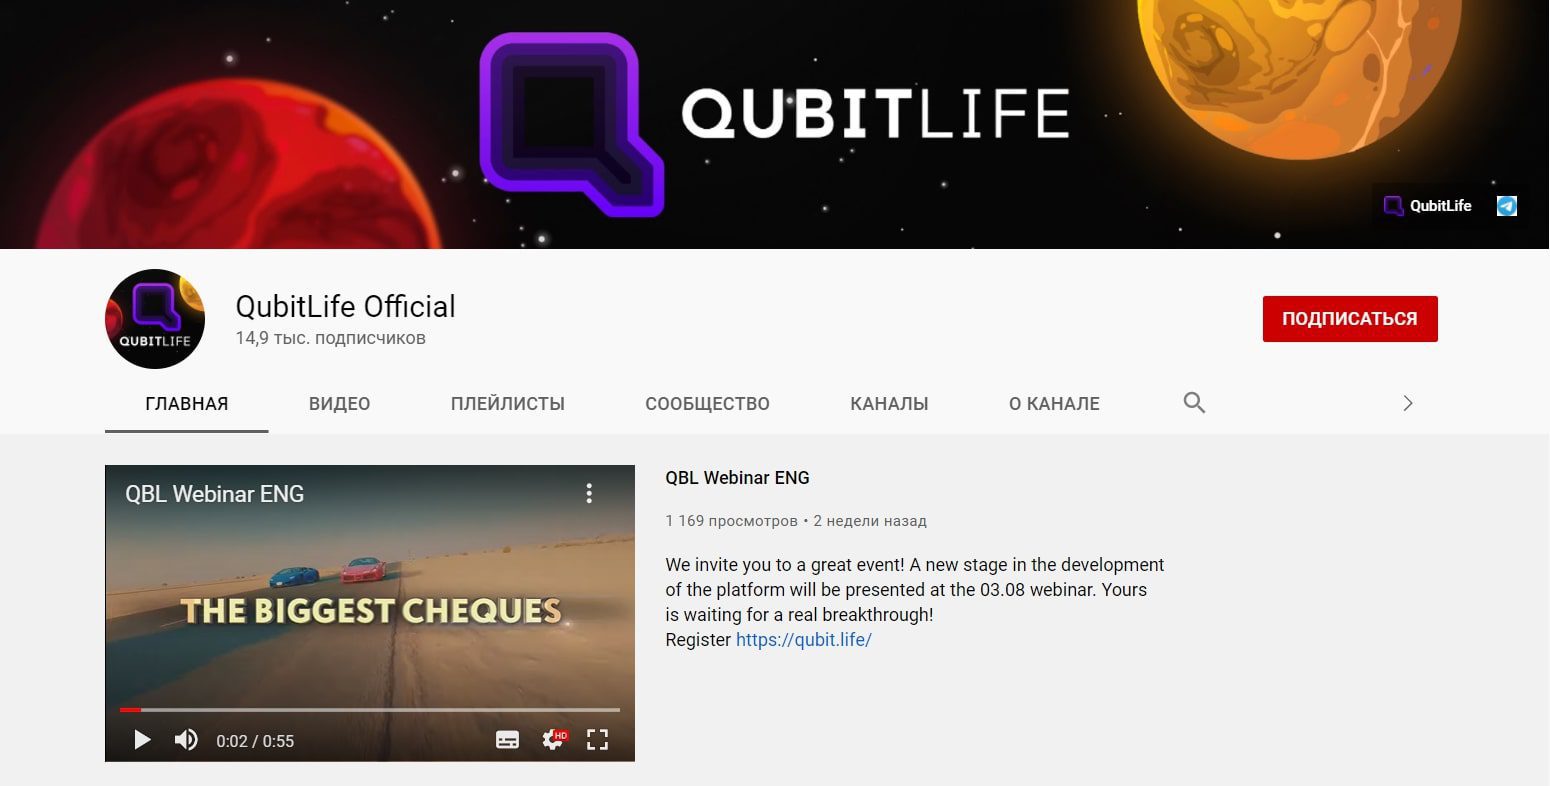 Ютуб канал Qubit life